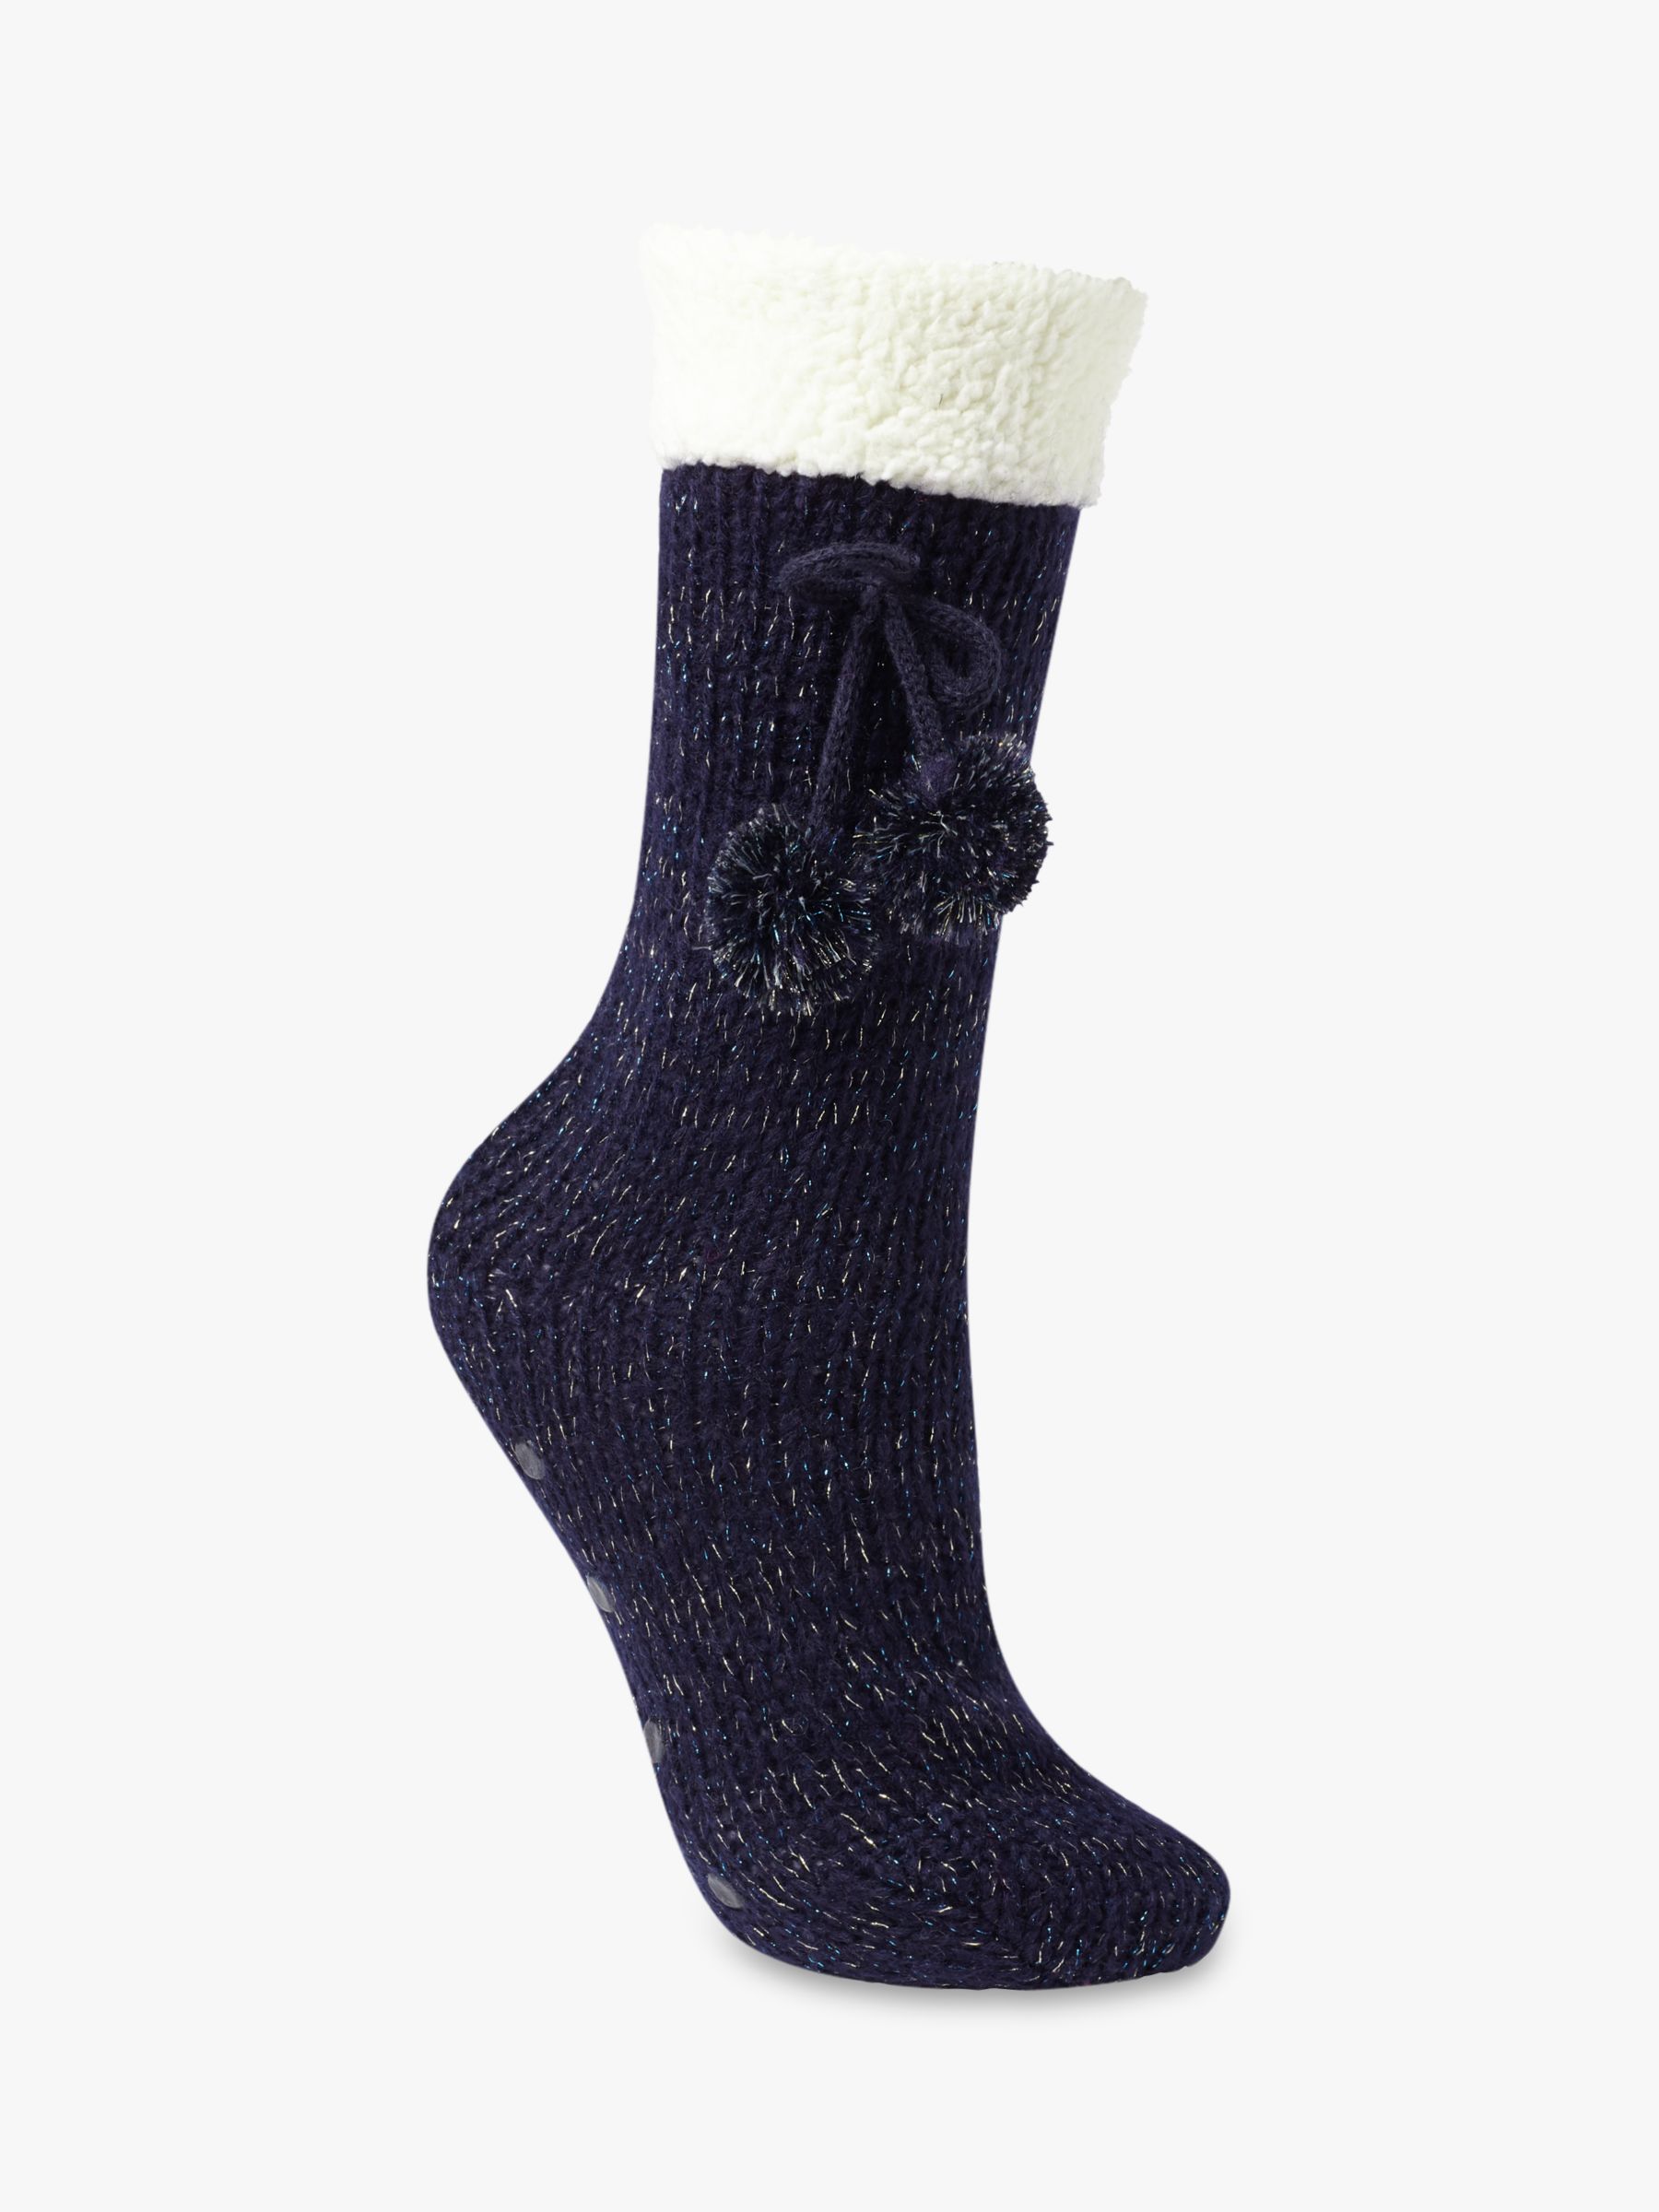 John Lewis & Partners Metallic Knitted Slipper Socks, Navy/Cream